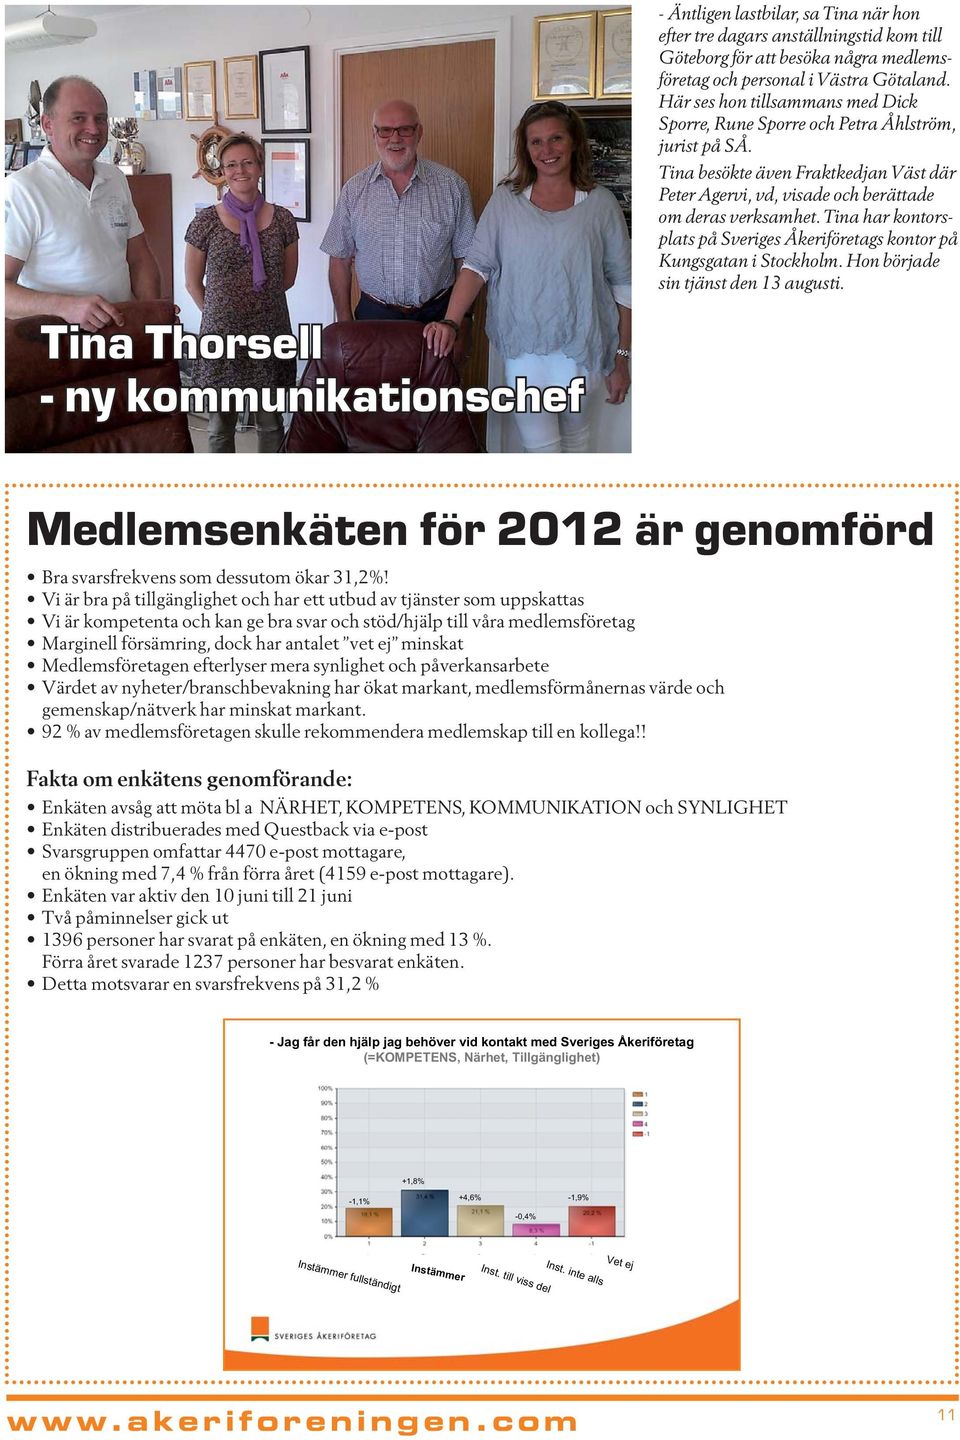 Tina har kontorsplats på Sveriges Åkeriföretags kontor på Kungsgatan i Stockholm. Hon började sin tjänst den 13 augusti. Medlemsenkäten för 2012 är genomförd Bra svarsfrekvens som dessutom ökar 31,2%!